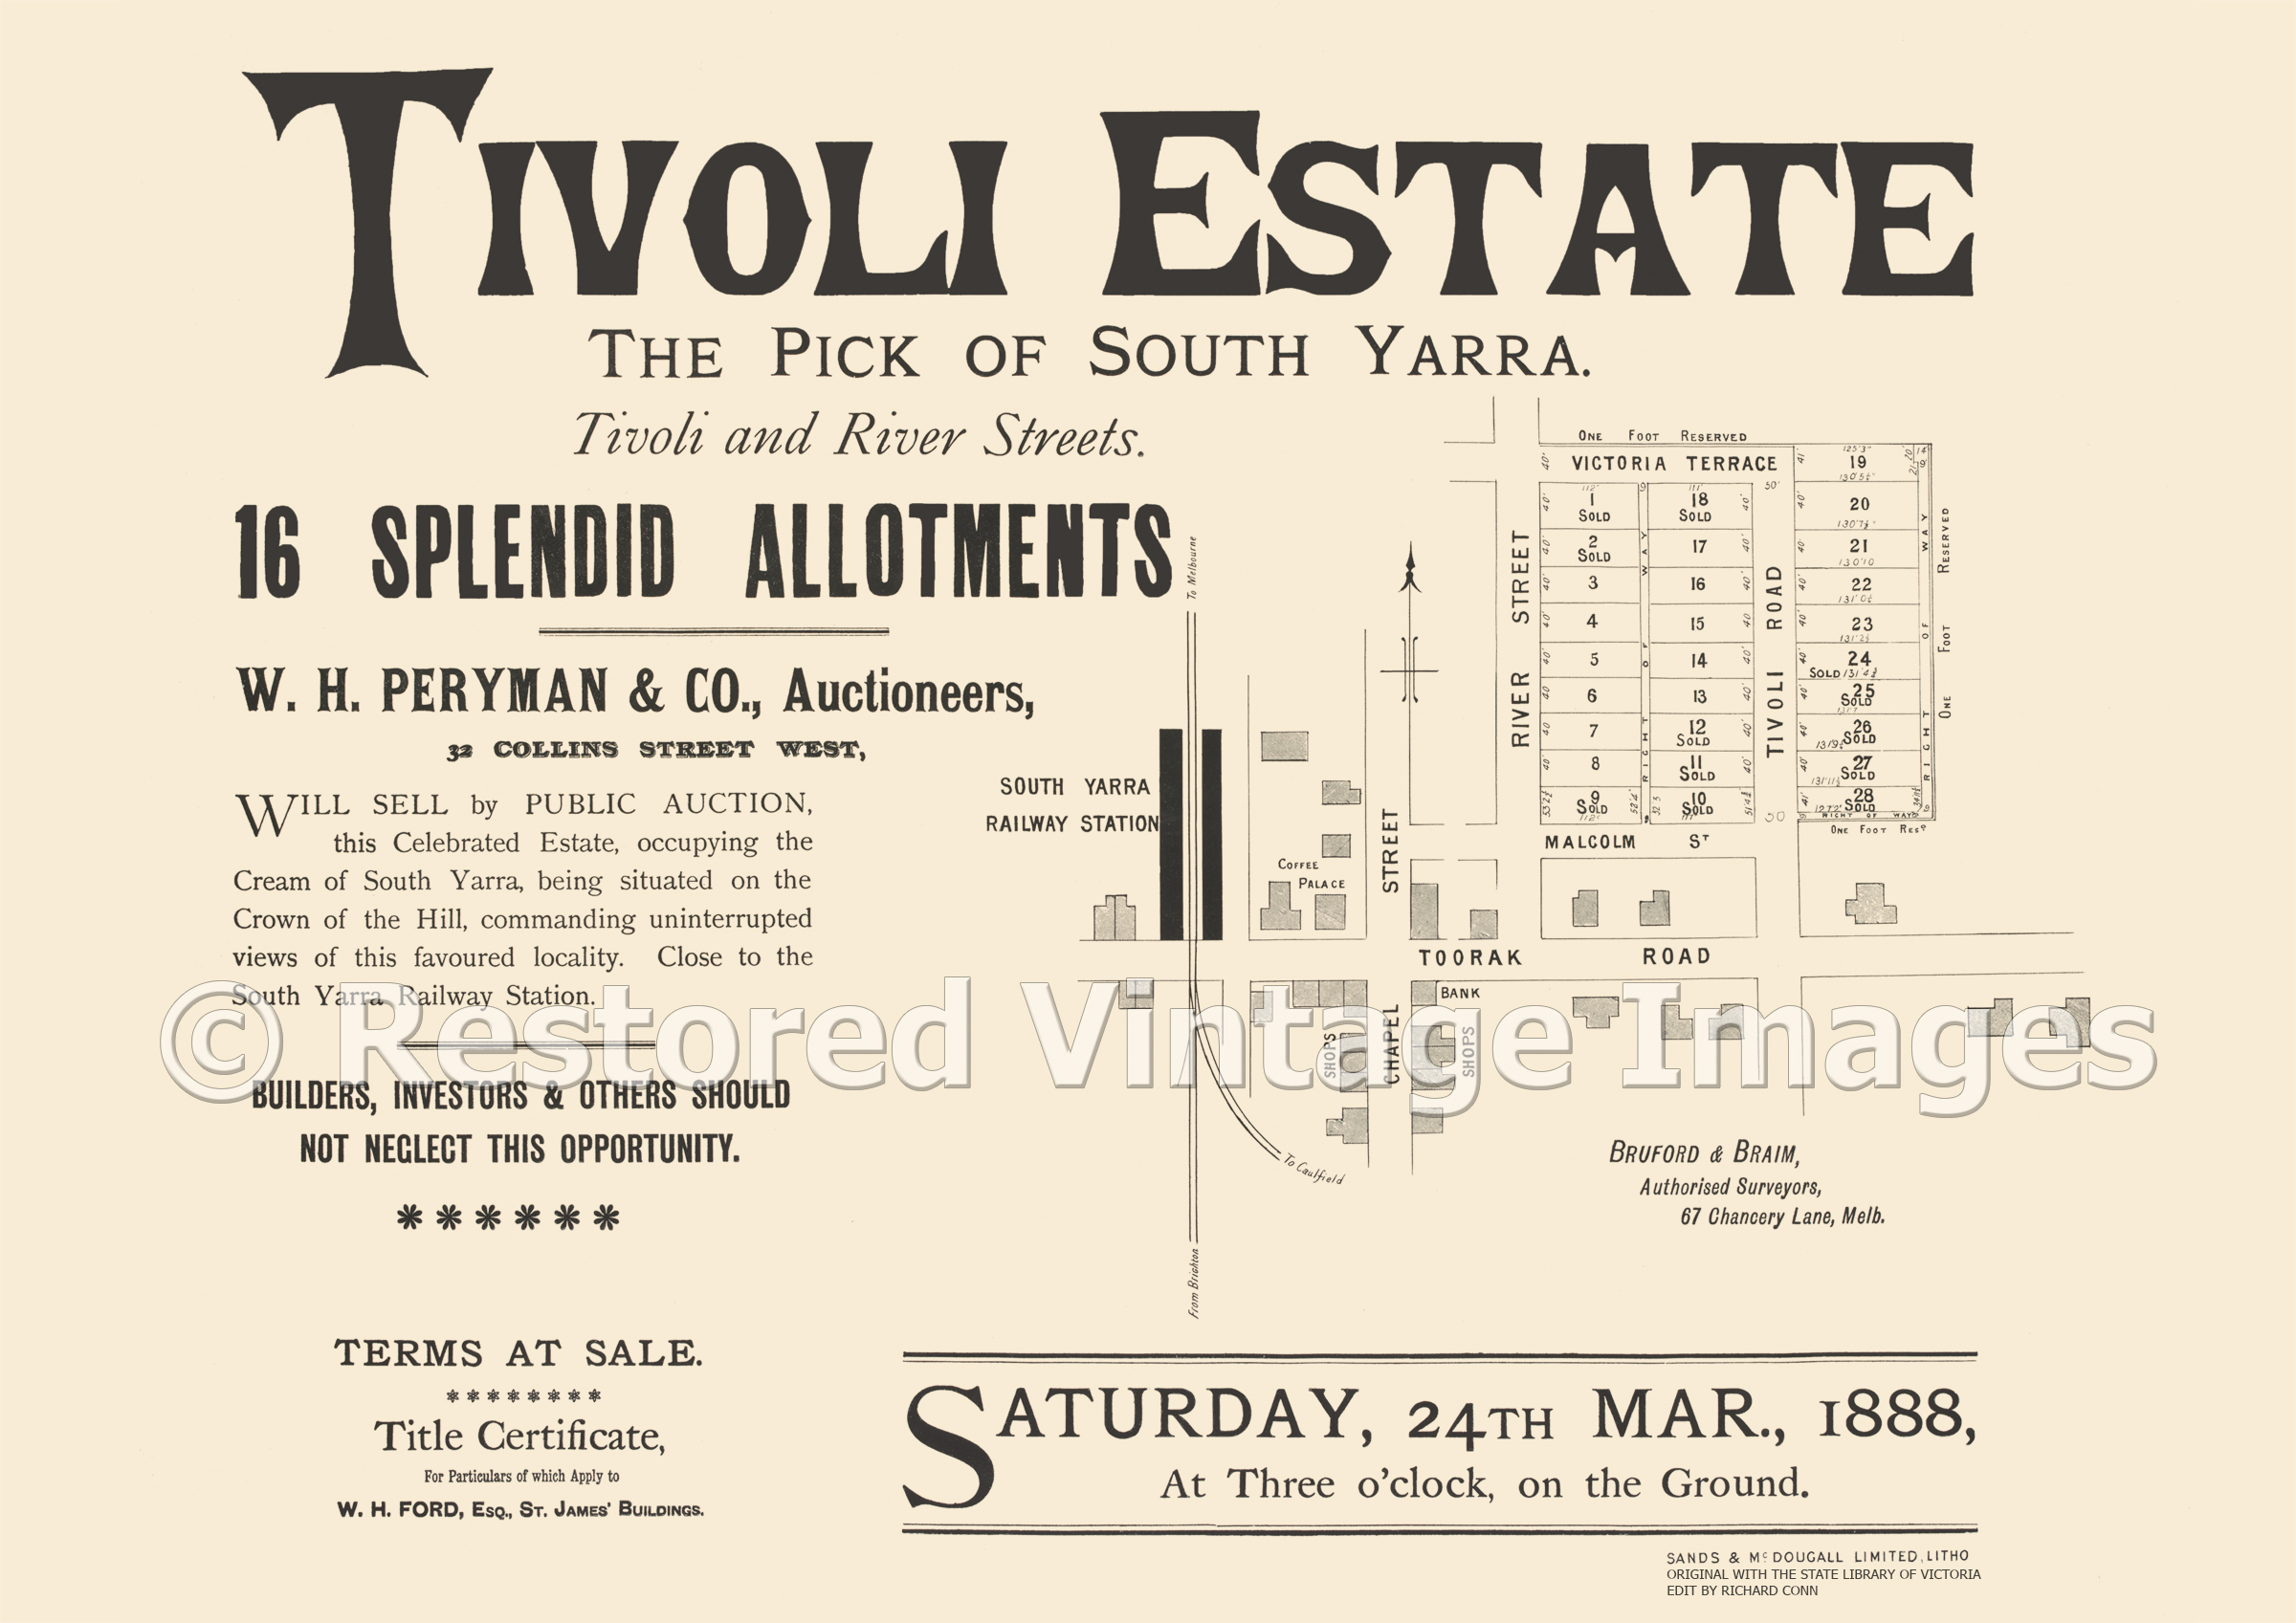 Tivoli Estate 24th March, 1888 – South Yarra